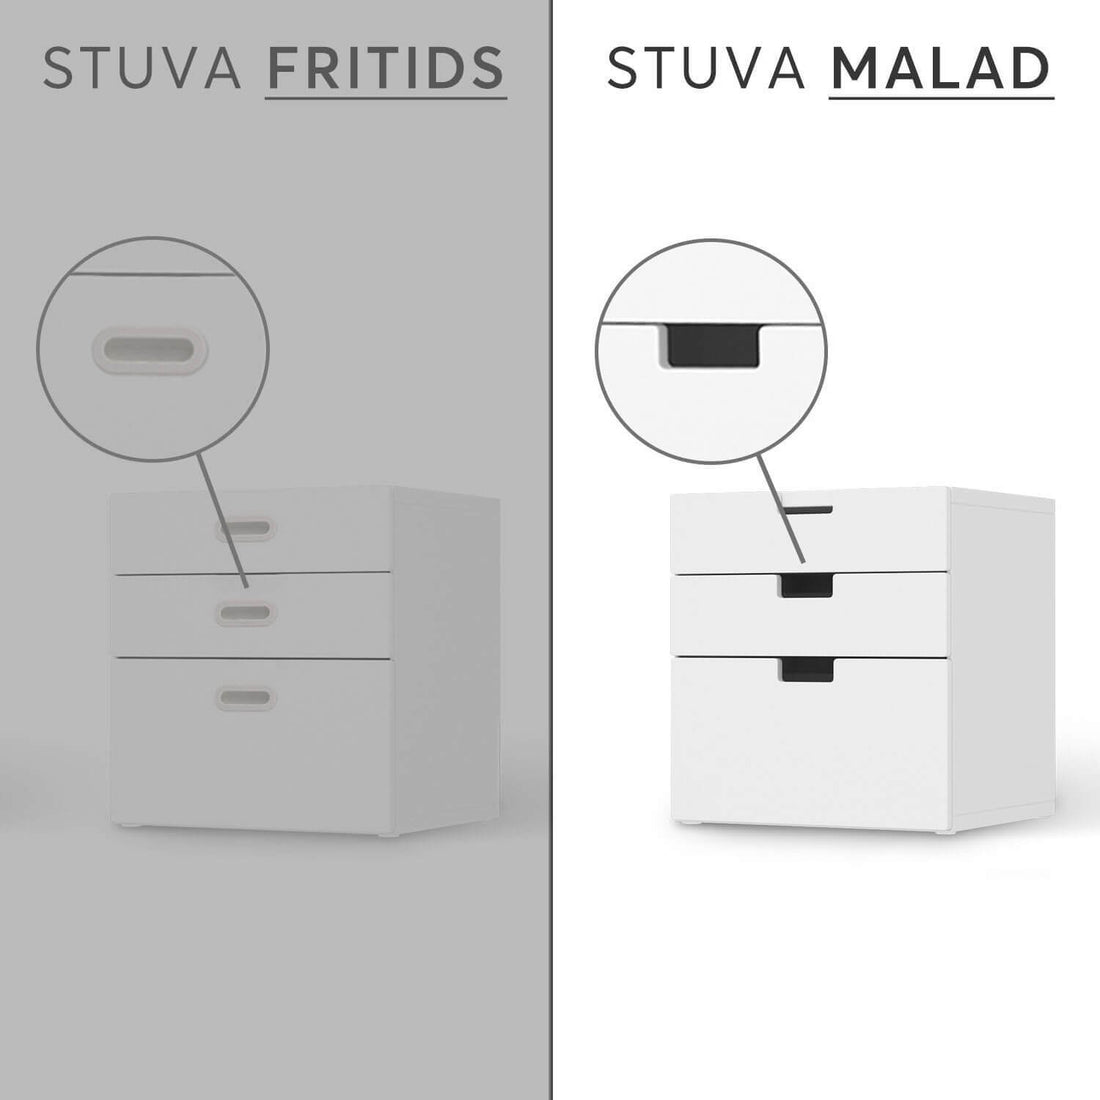 Folie für Möbel IKEA Stuva / Malad Kommode - 3 Schubladen - Design: Paris